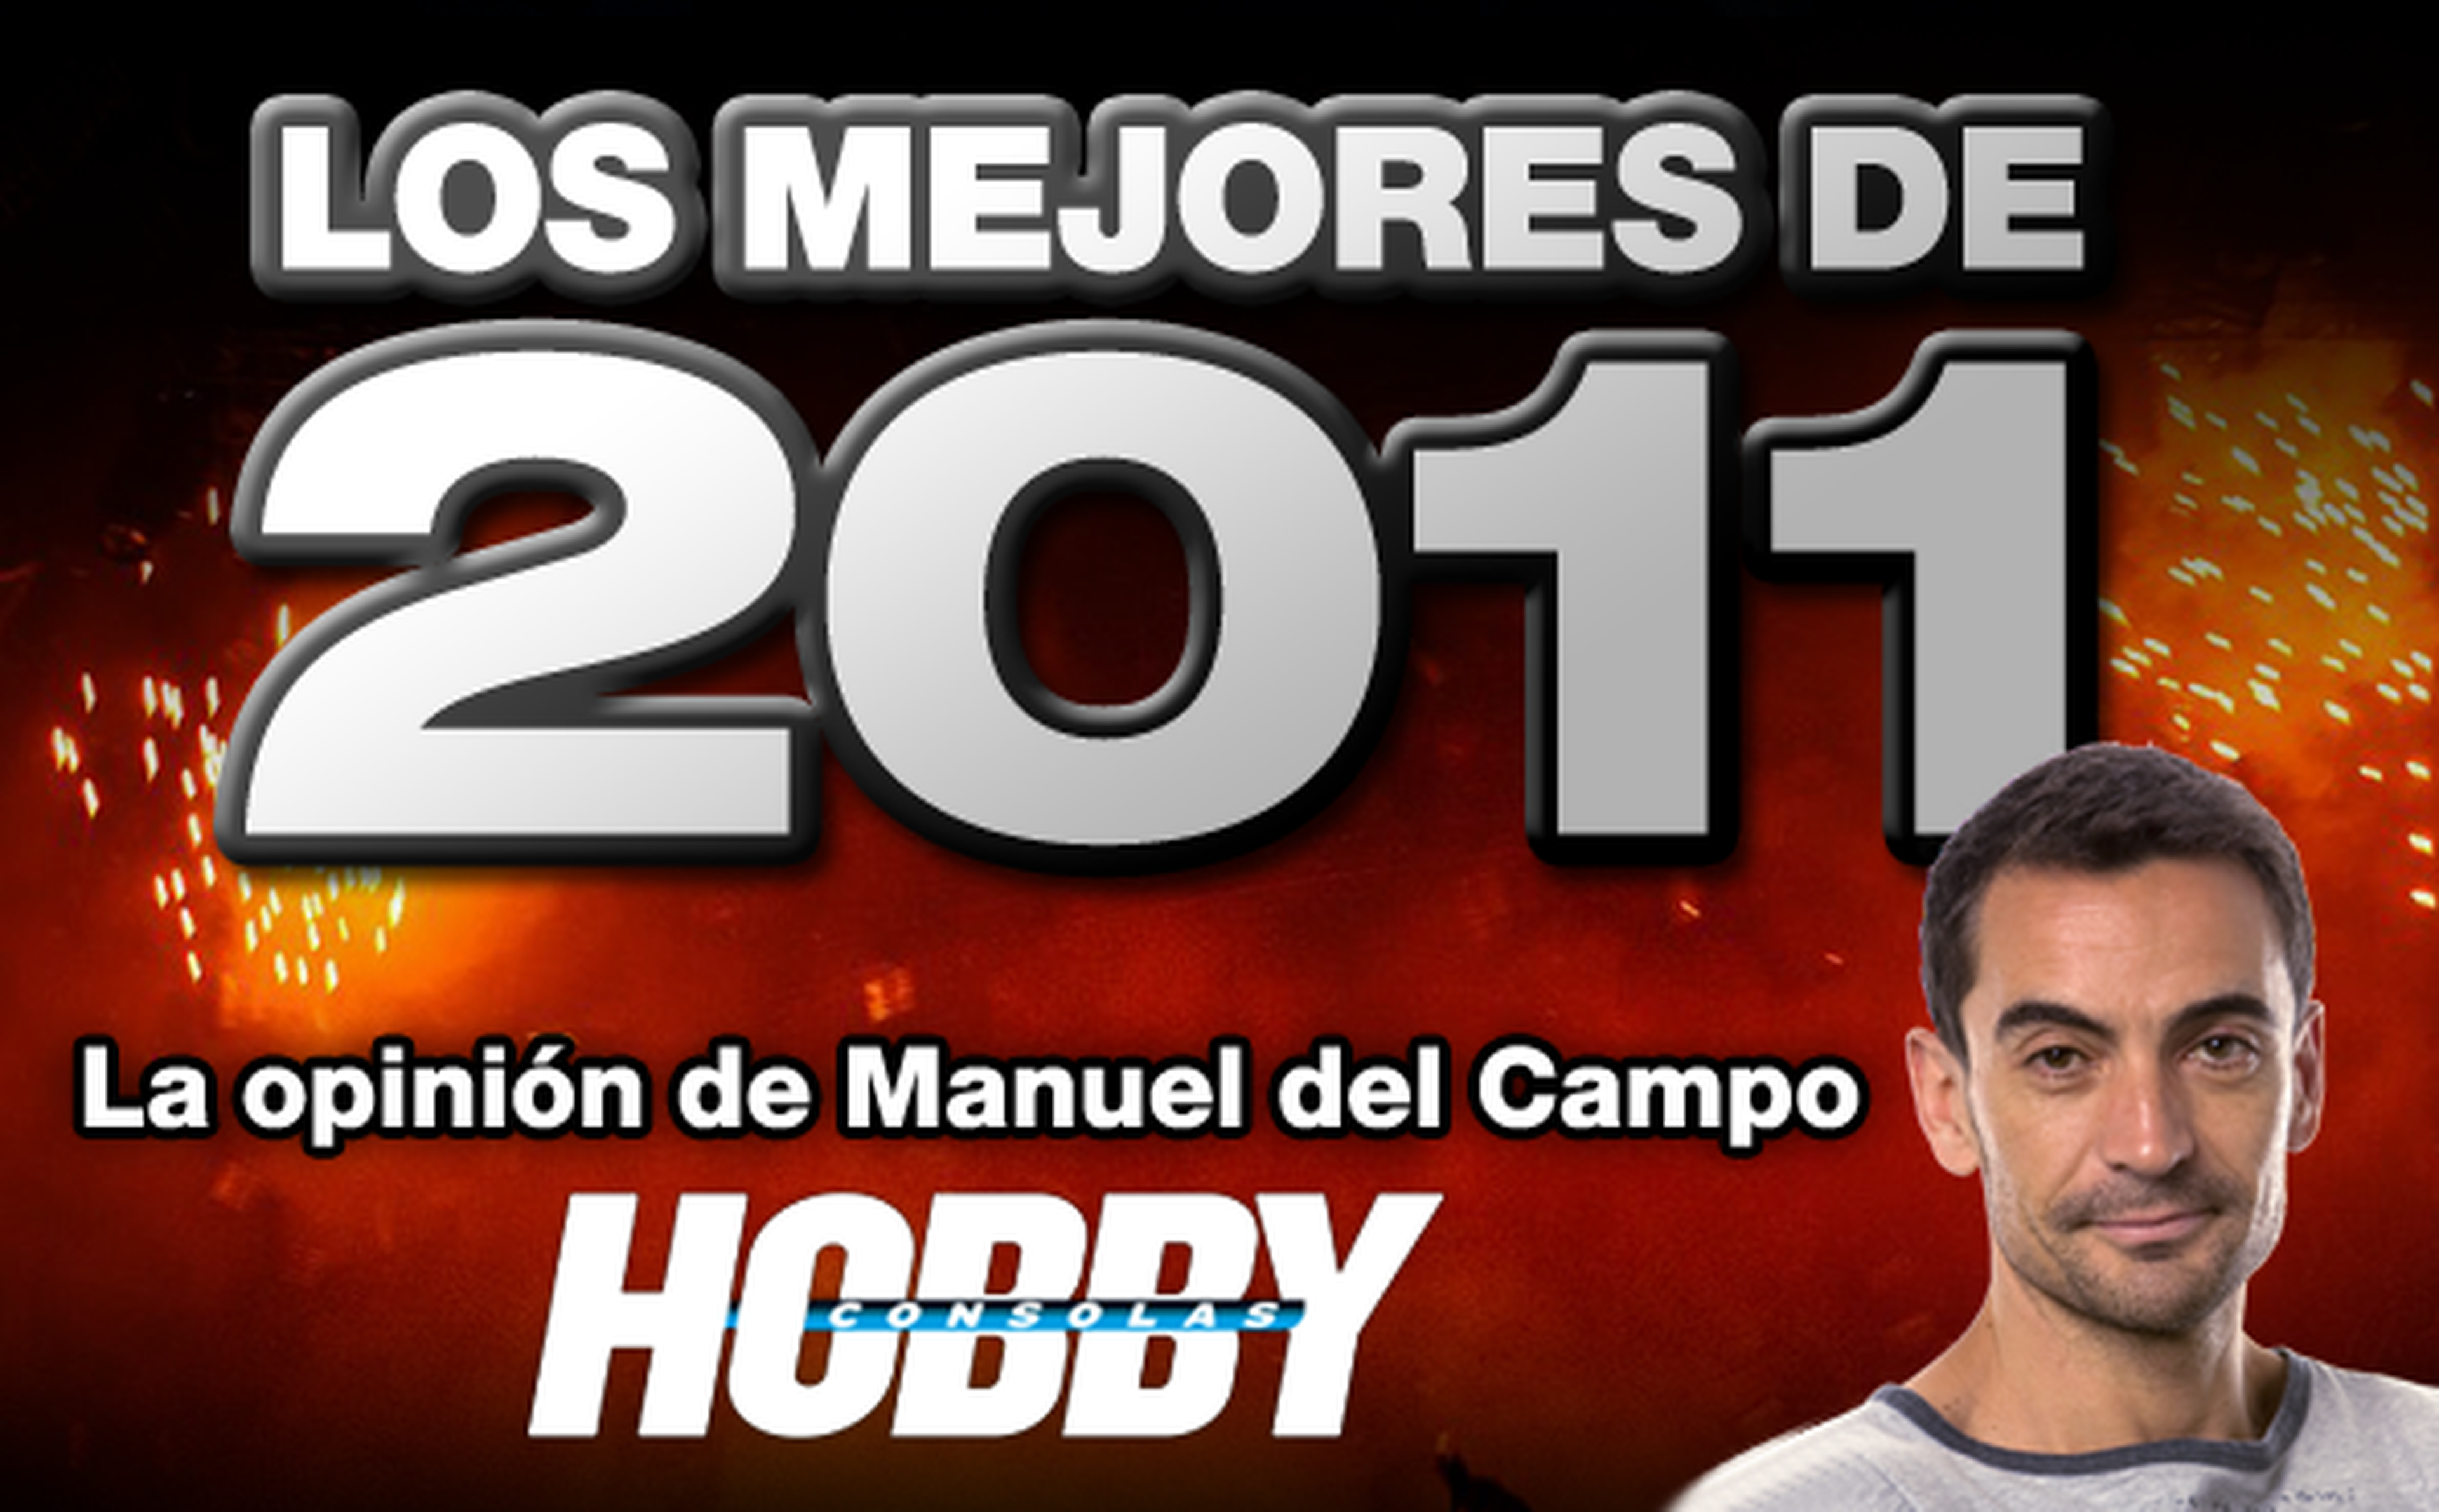 Los mejores de 2011: Manuel del Campo